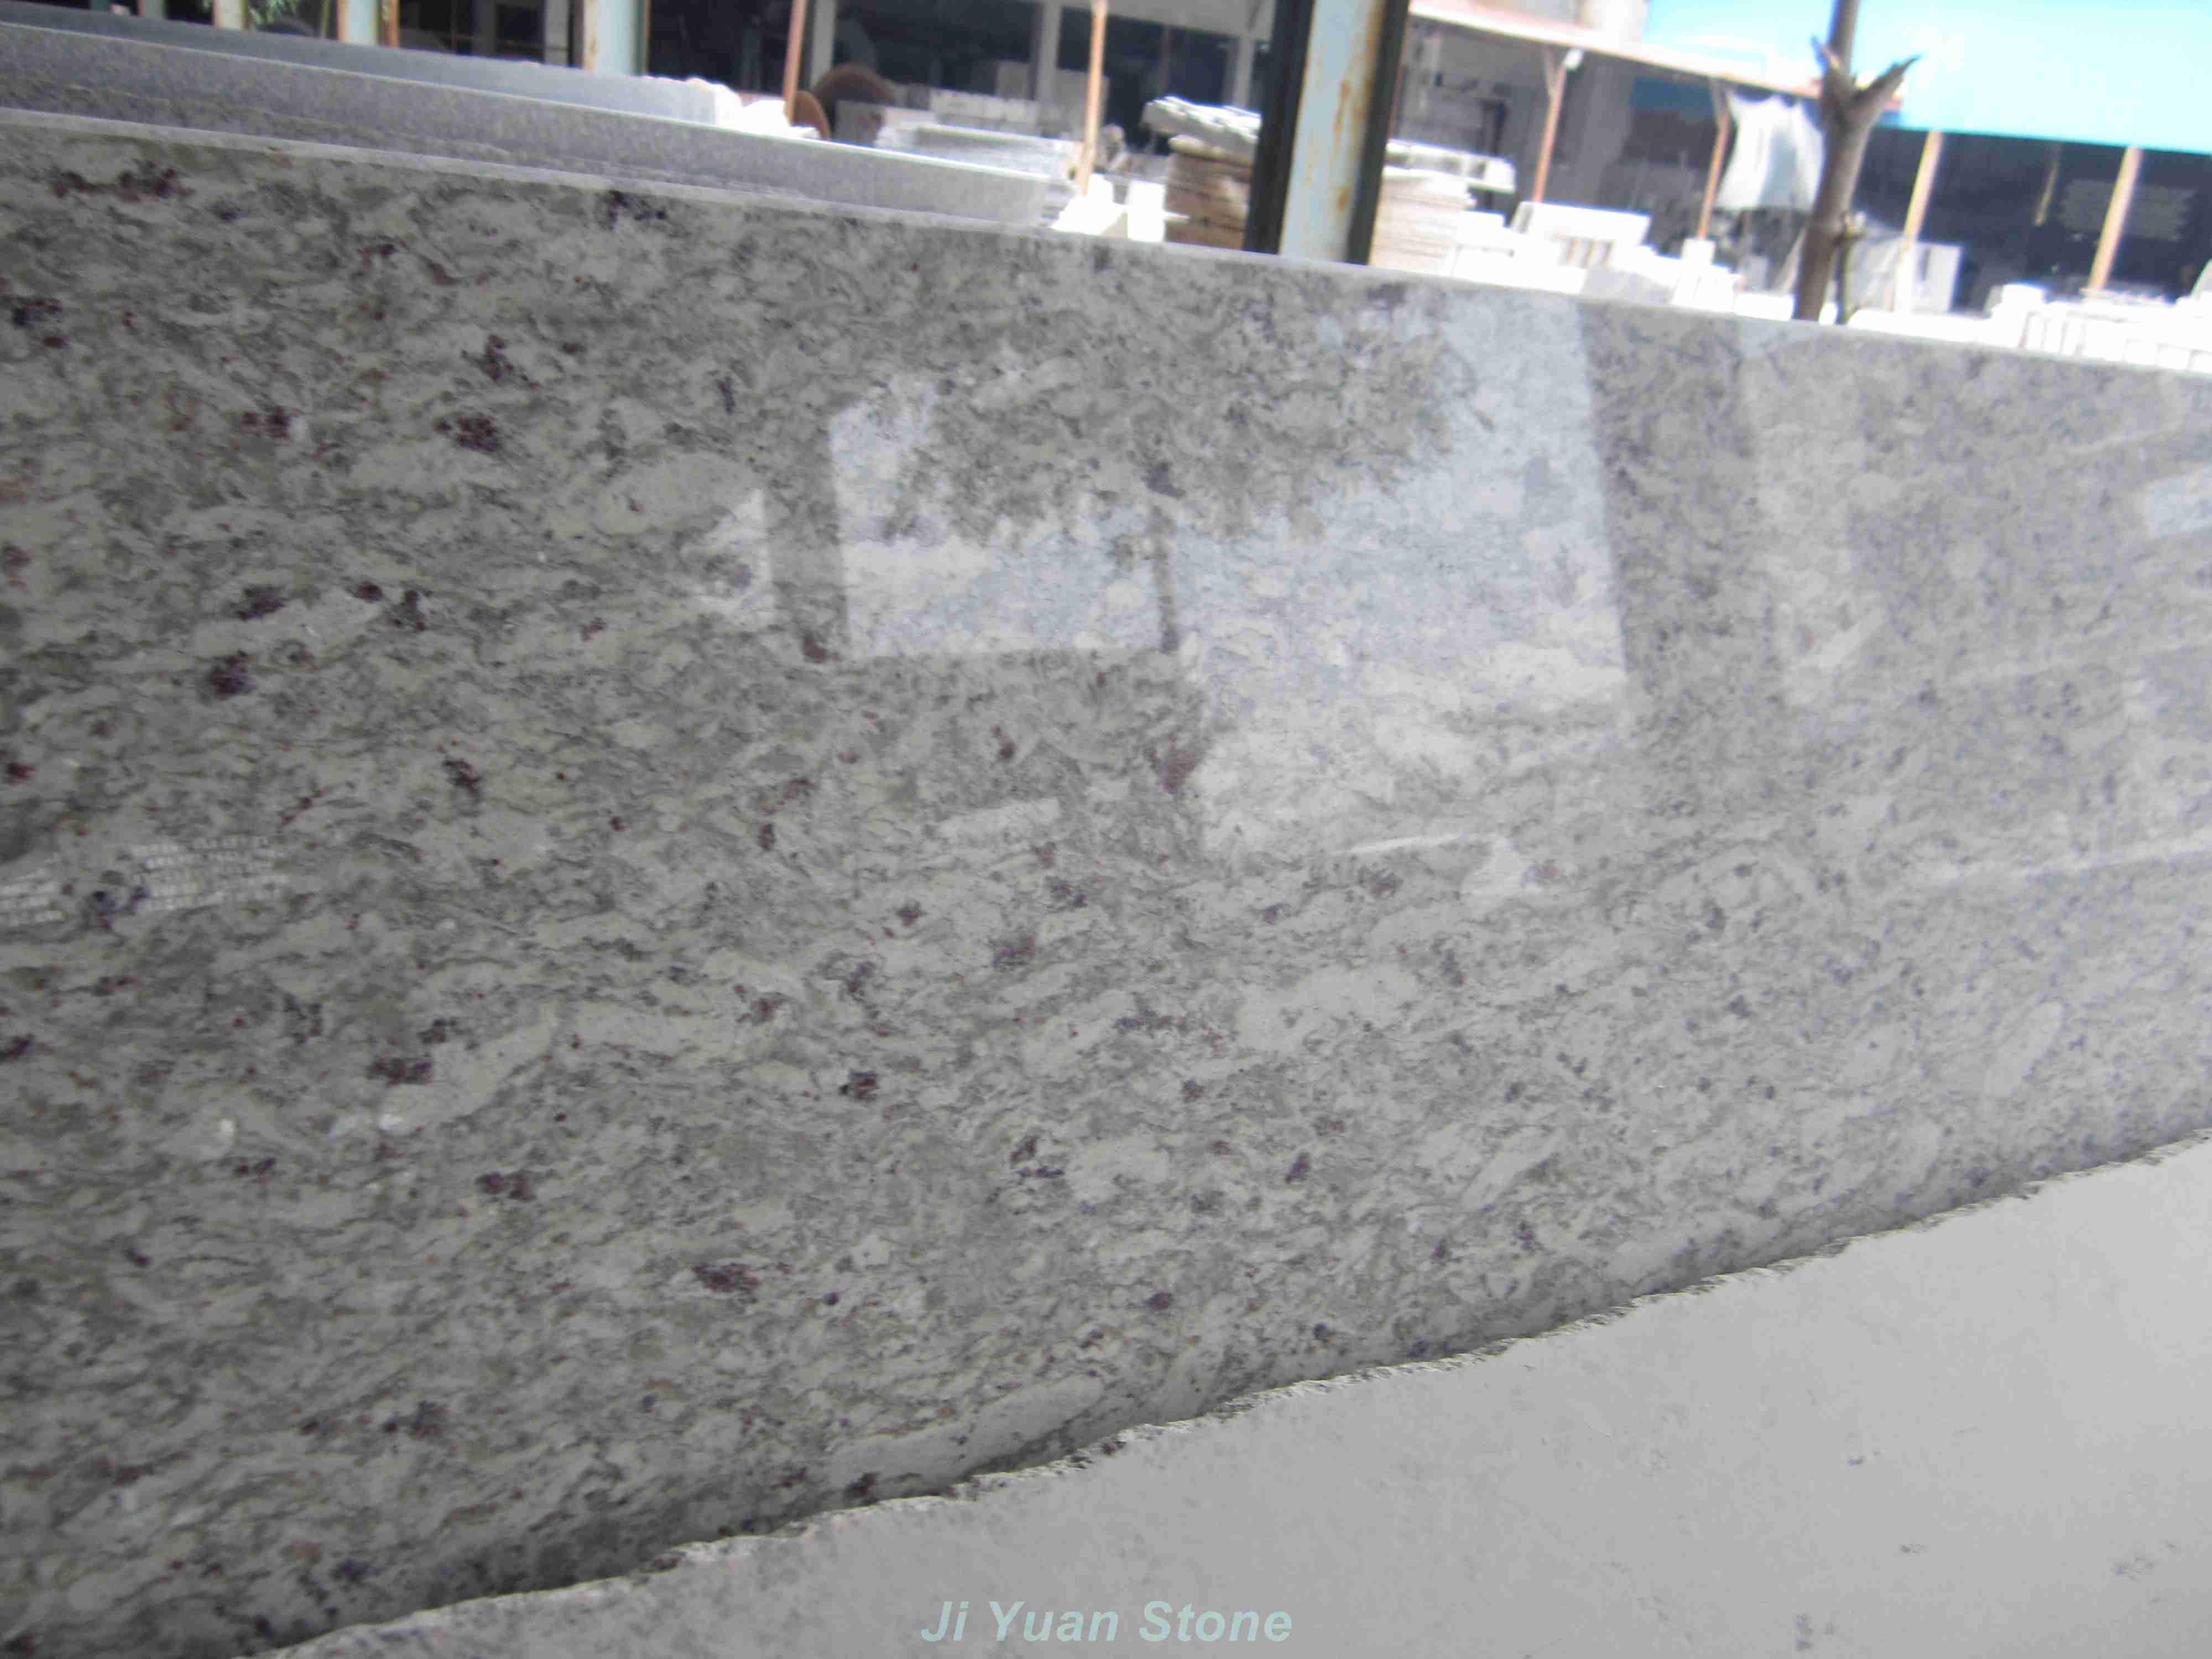 Moon white granite reviews,moon river granite,moon white granite price in bangalore,moon white color,moon white quartz,moon white granite quarry